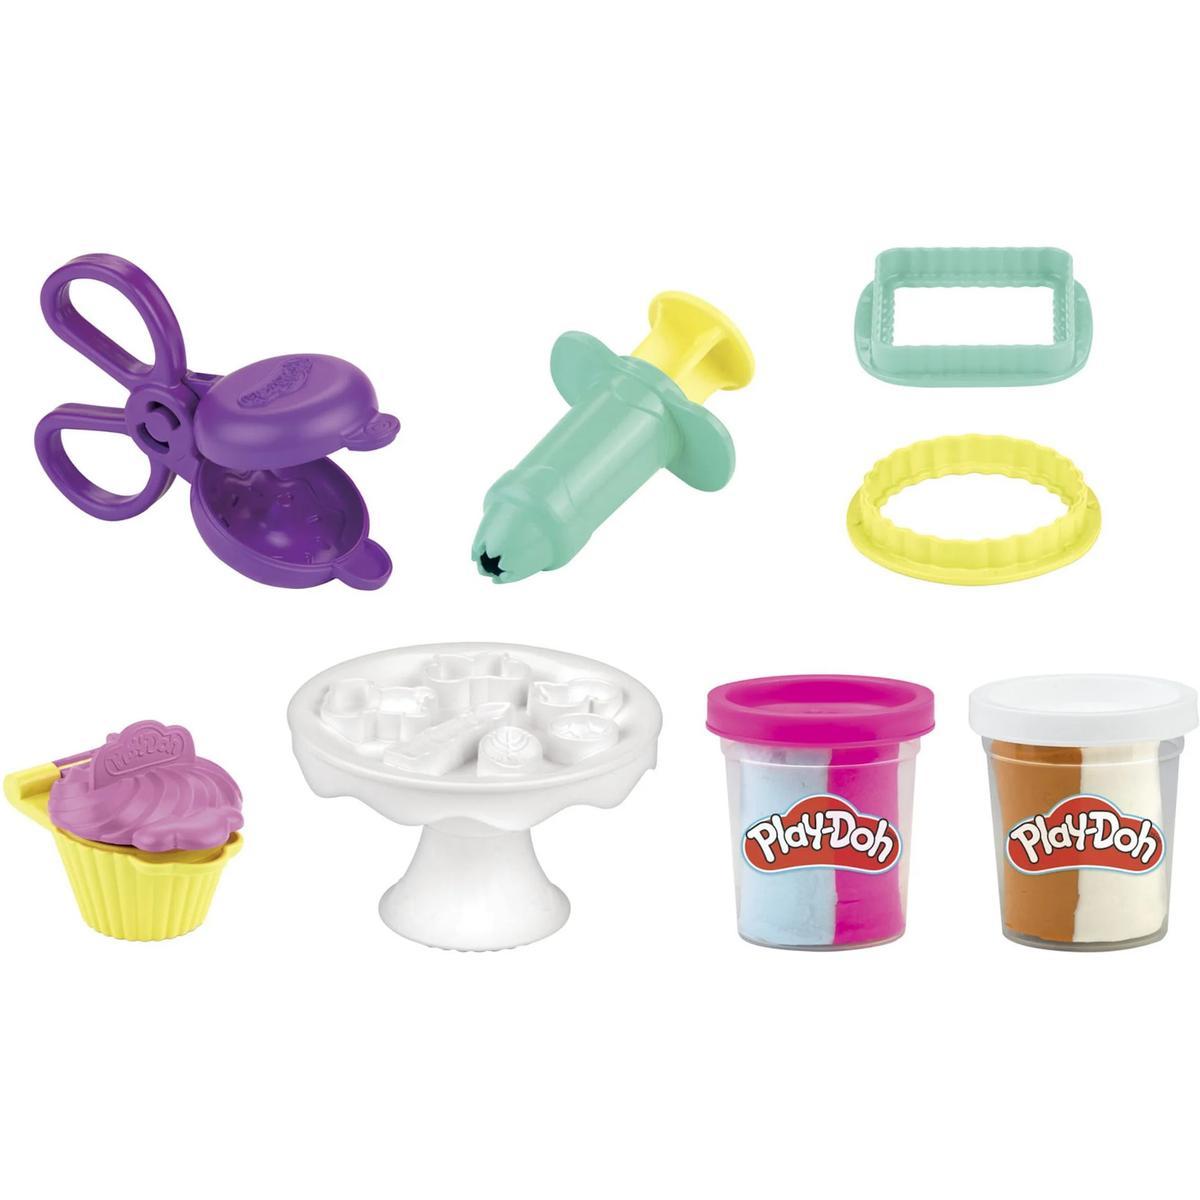 Play-doh kitchen creations zestaw słodkości pączki I babeczki hasbro f3464 dla dziecka  nr. 2